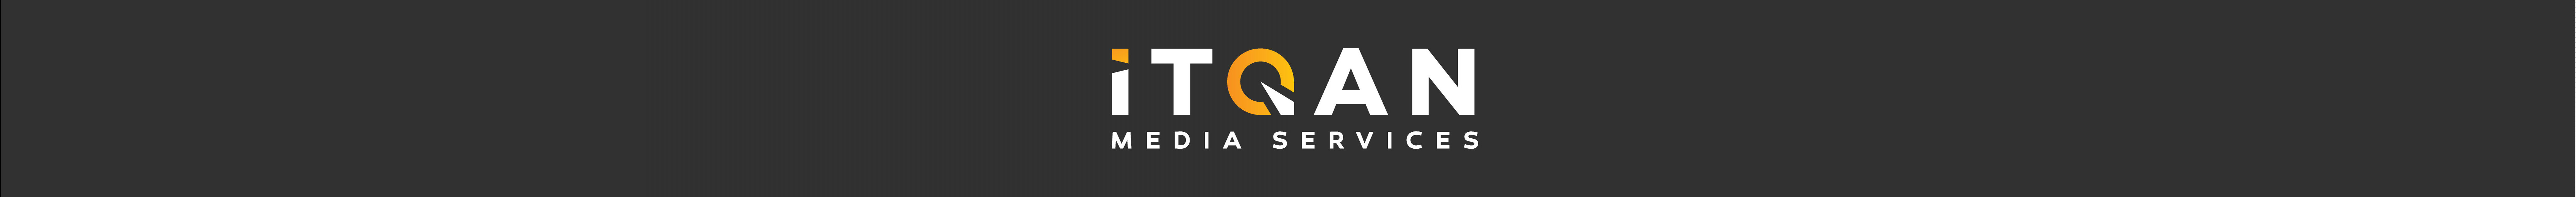 iTqan Media Service's profile banner